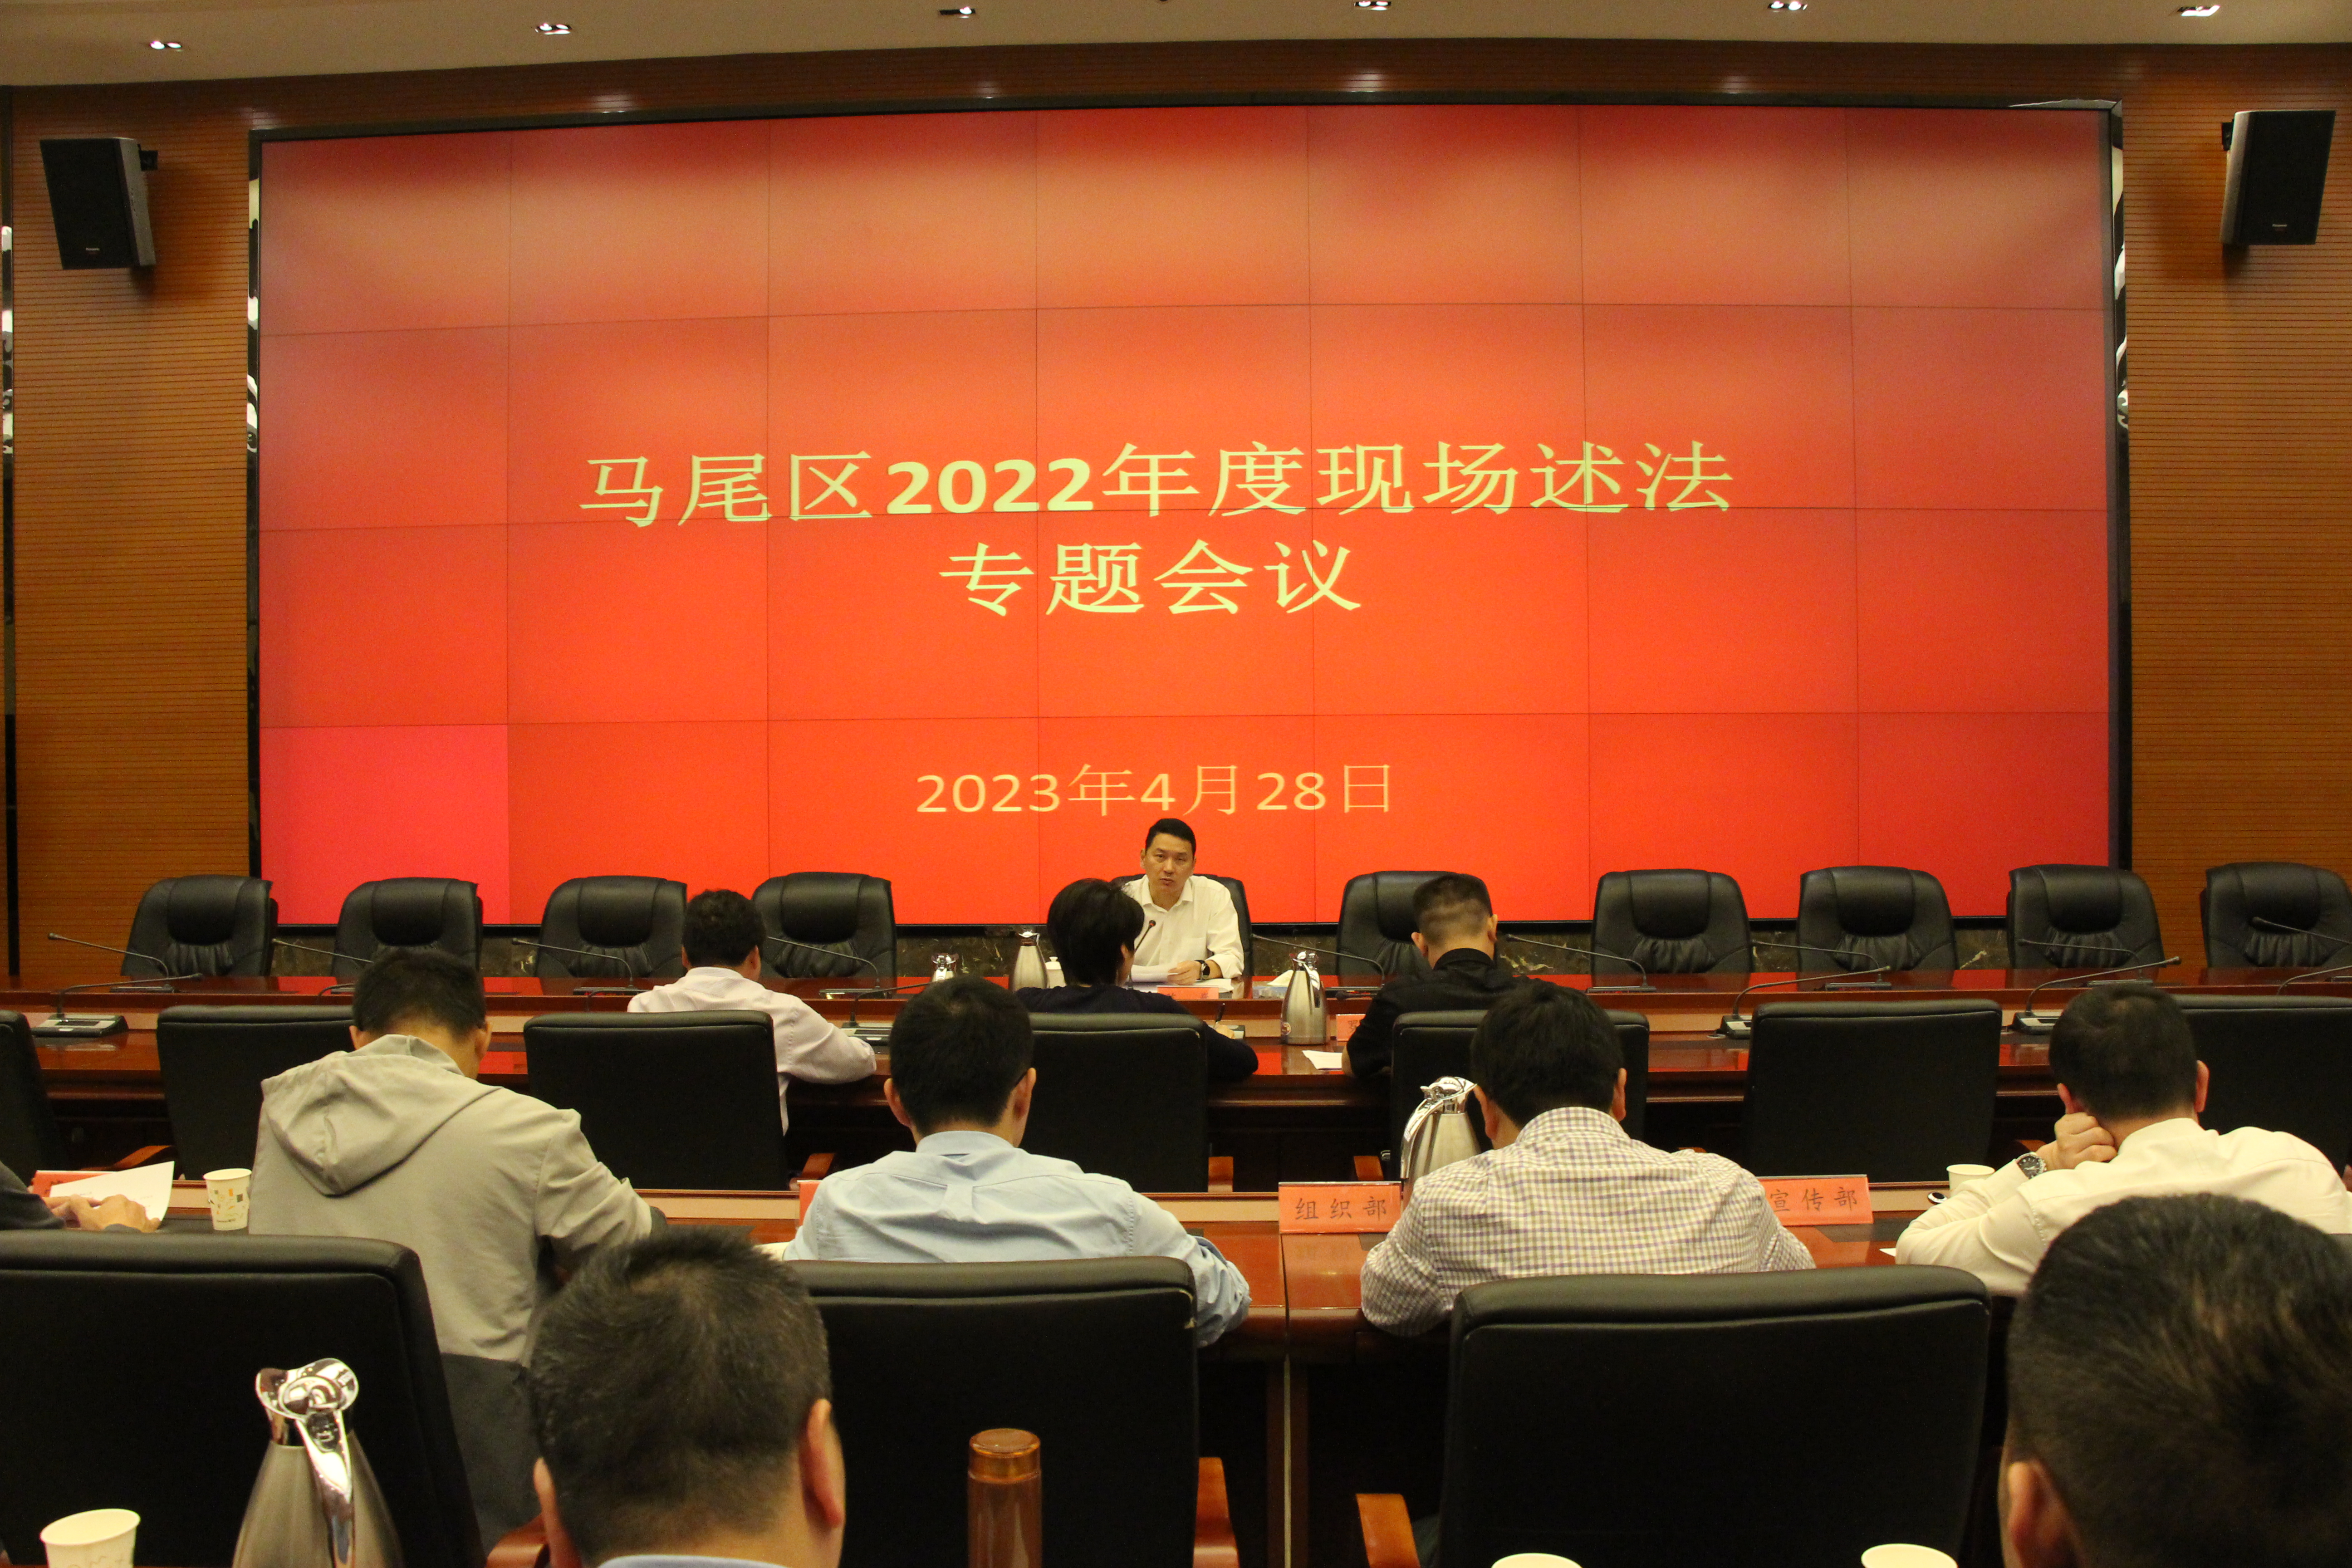 马尾区召开 2022 年度现场述法专题会议